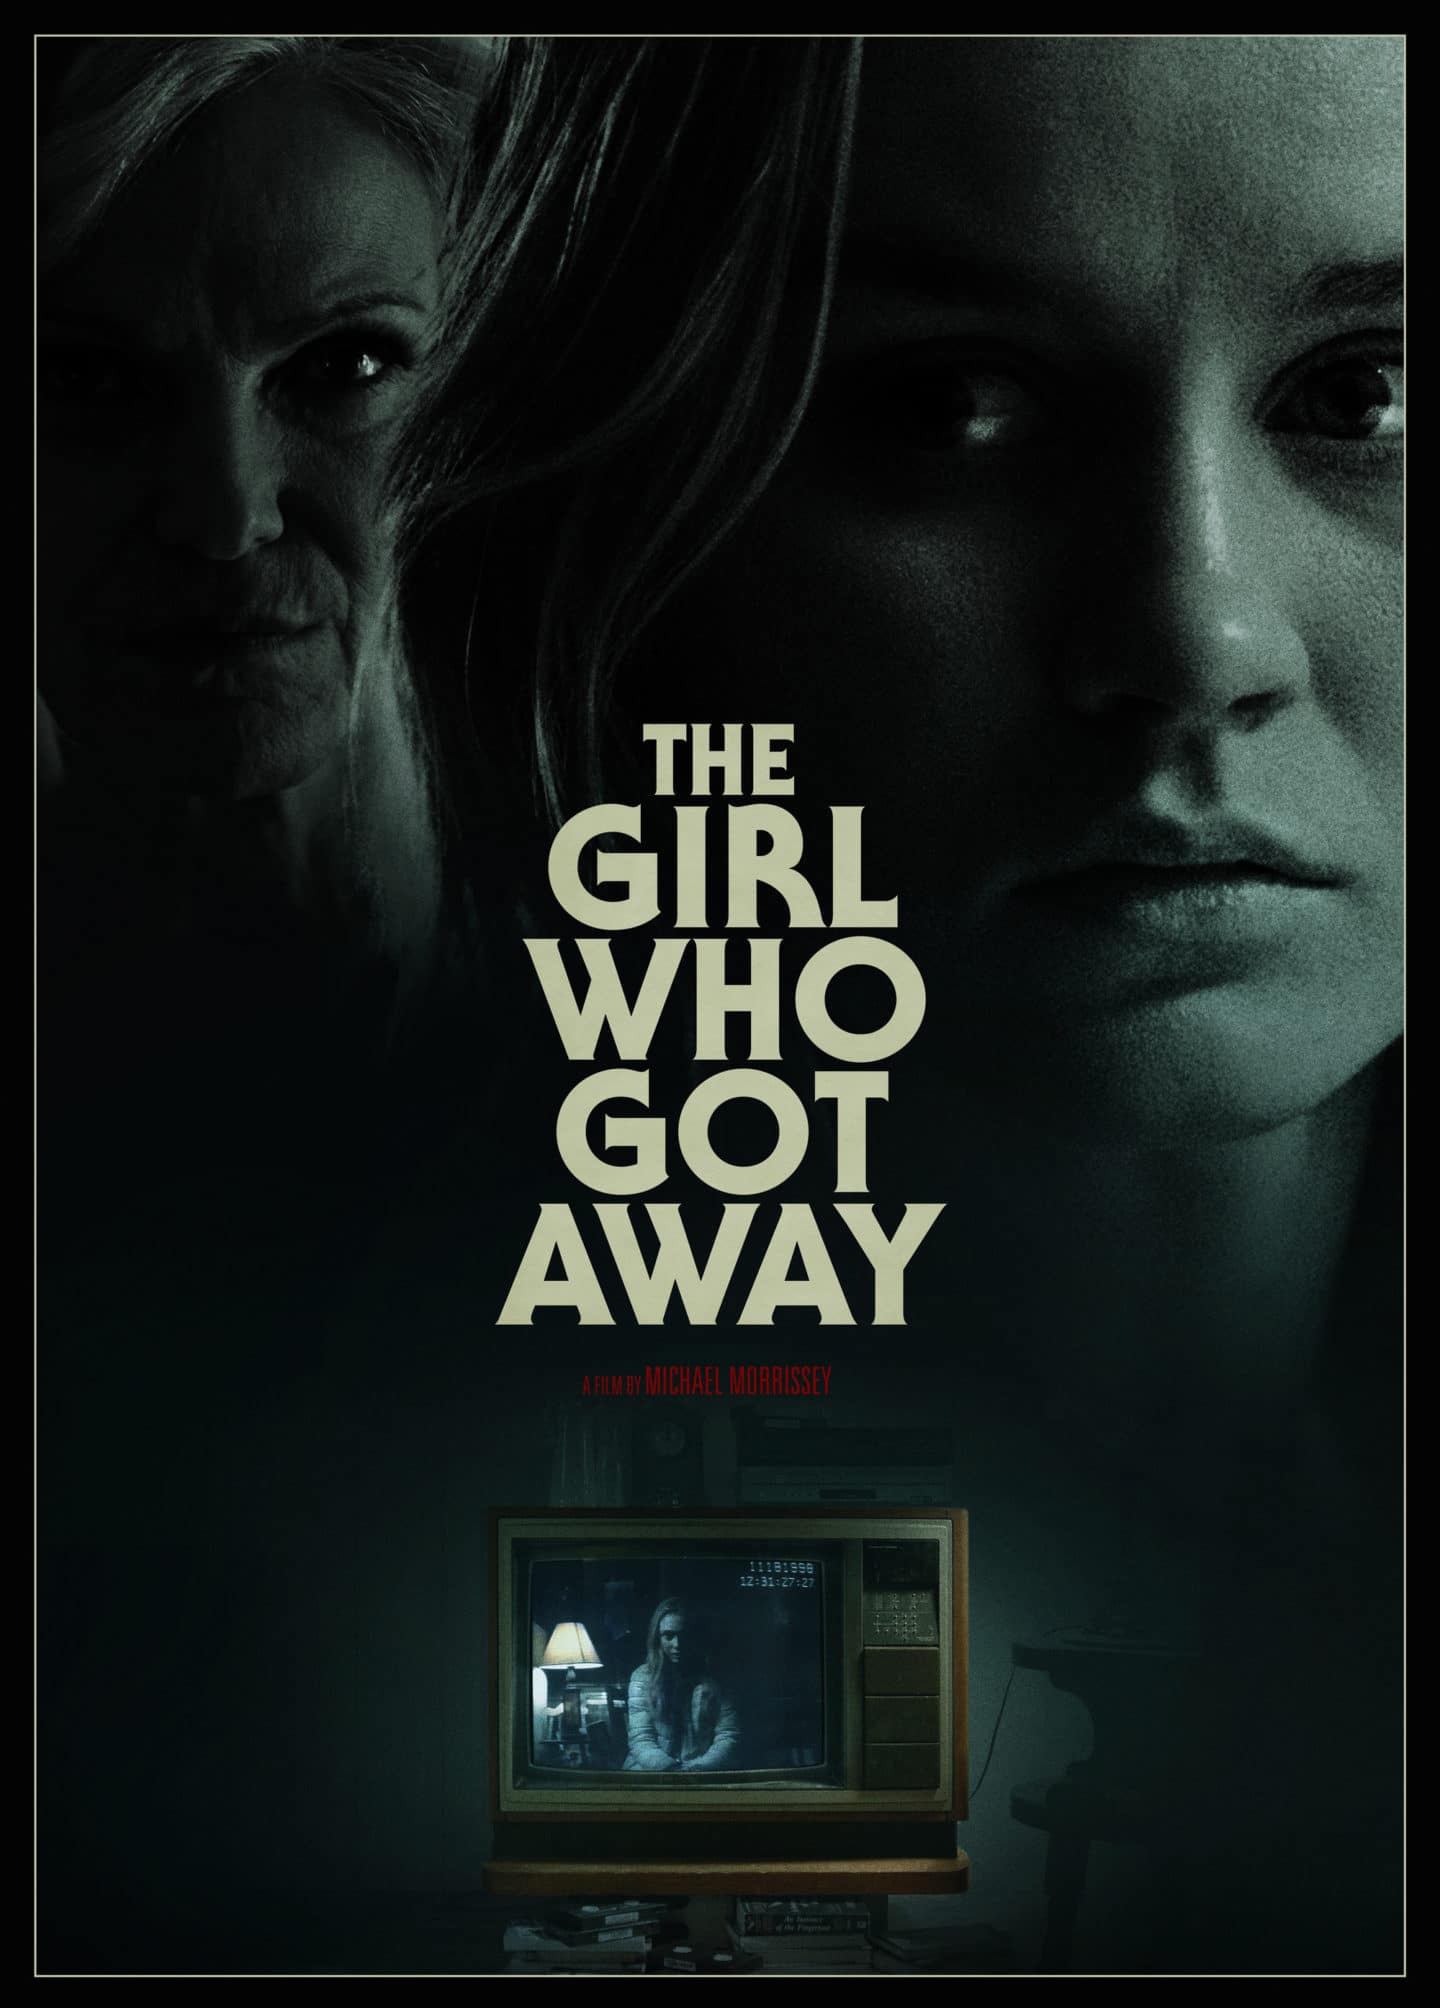 The Girl Who Got Away – Teaser Poster